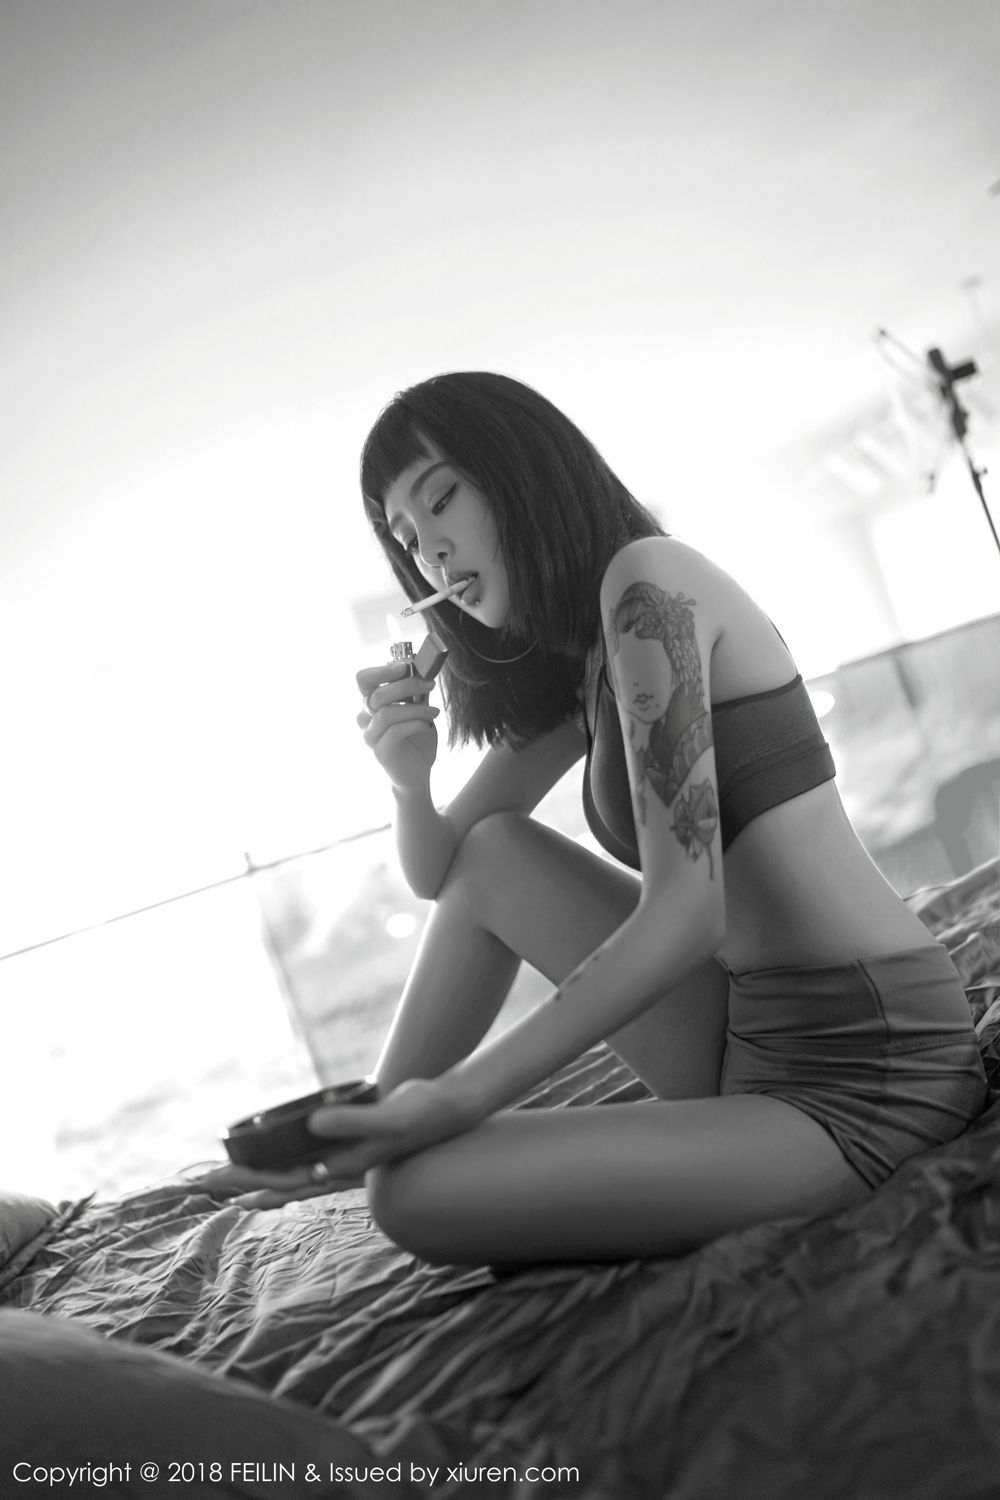 个性短发美女模特胸前大片纹身手持香烟写真